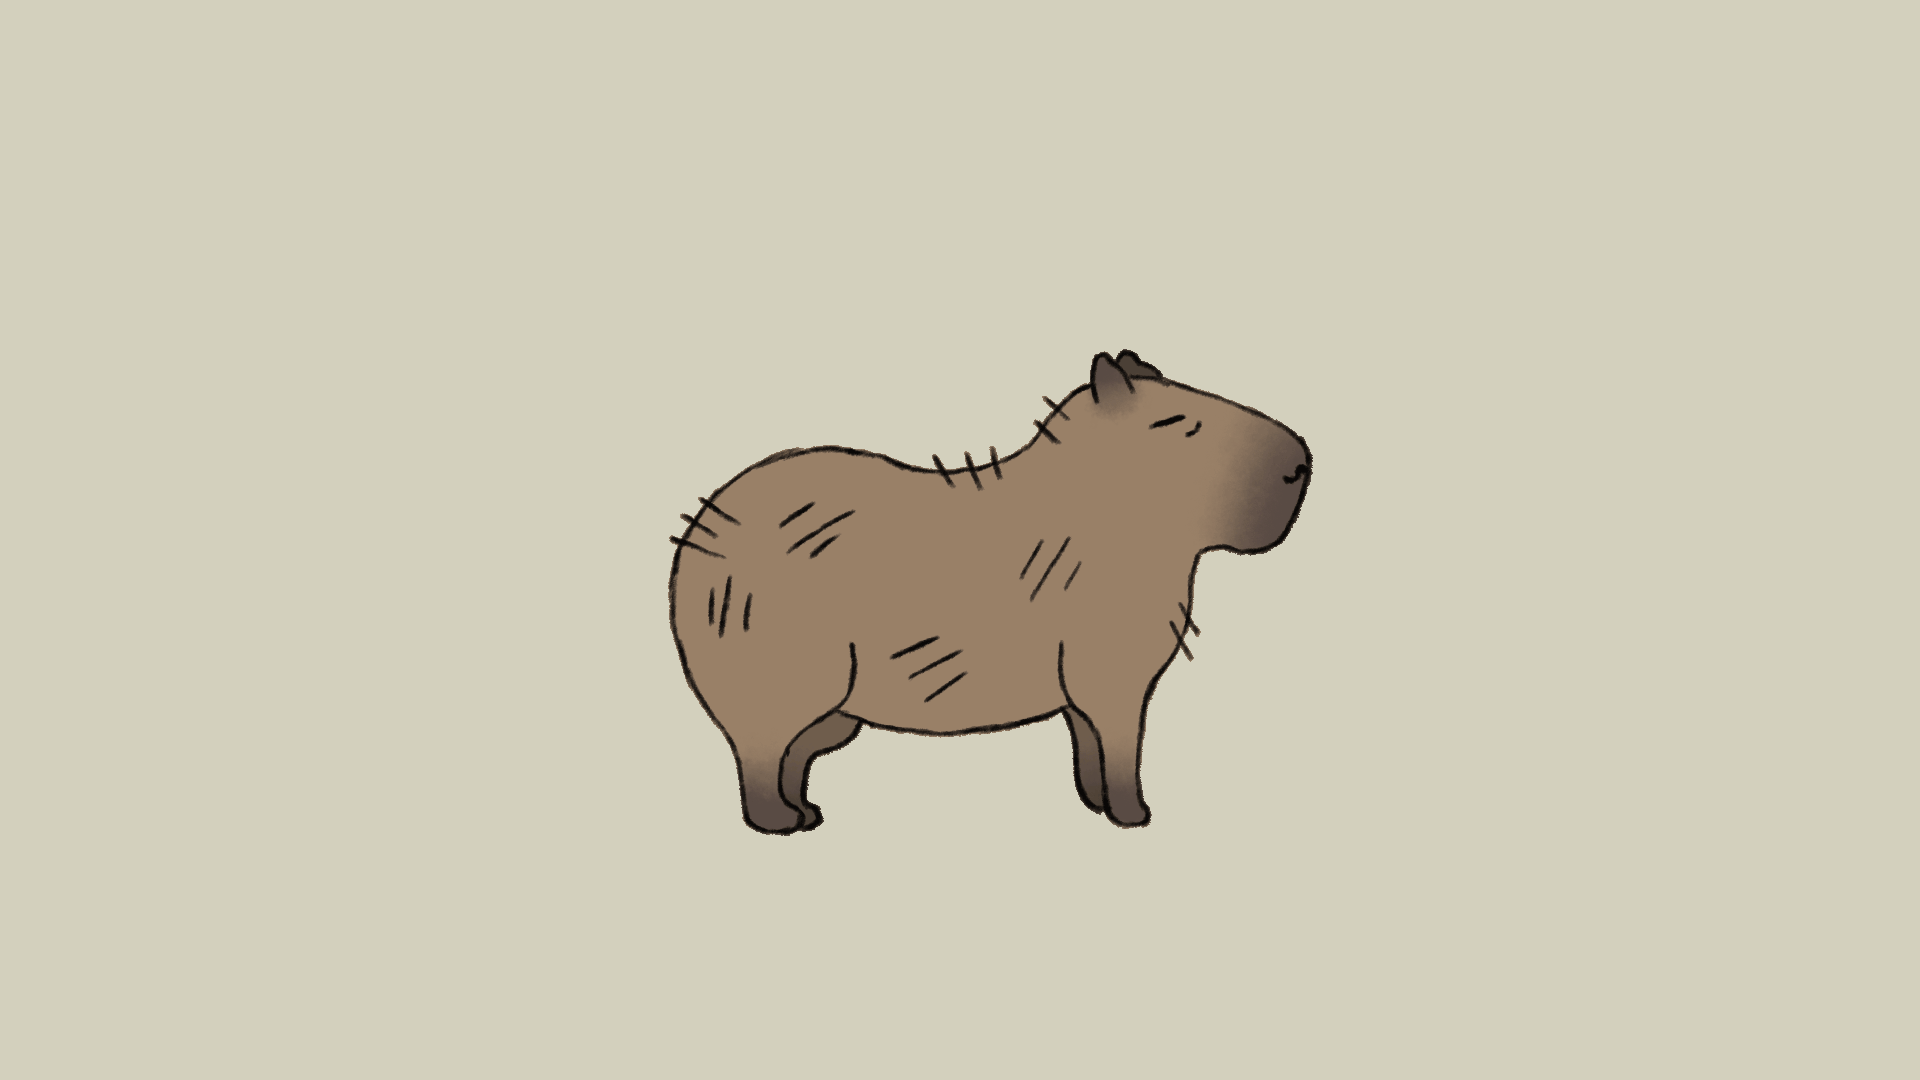 Capybara Cartoon Images  Free Download on Freepik